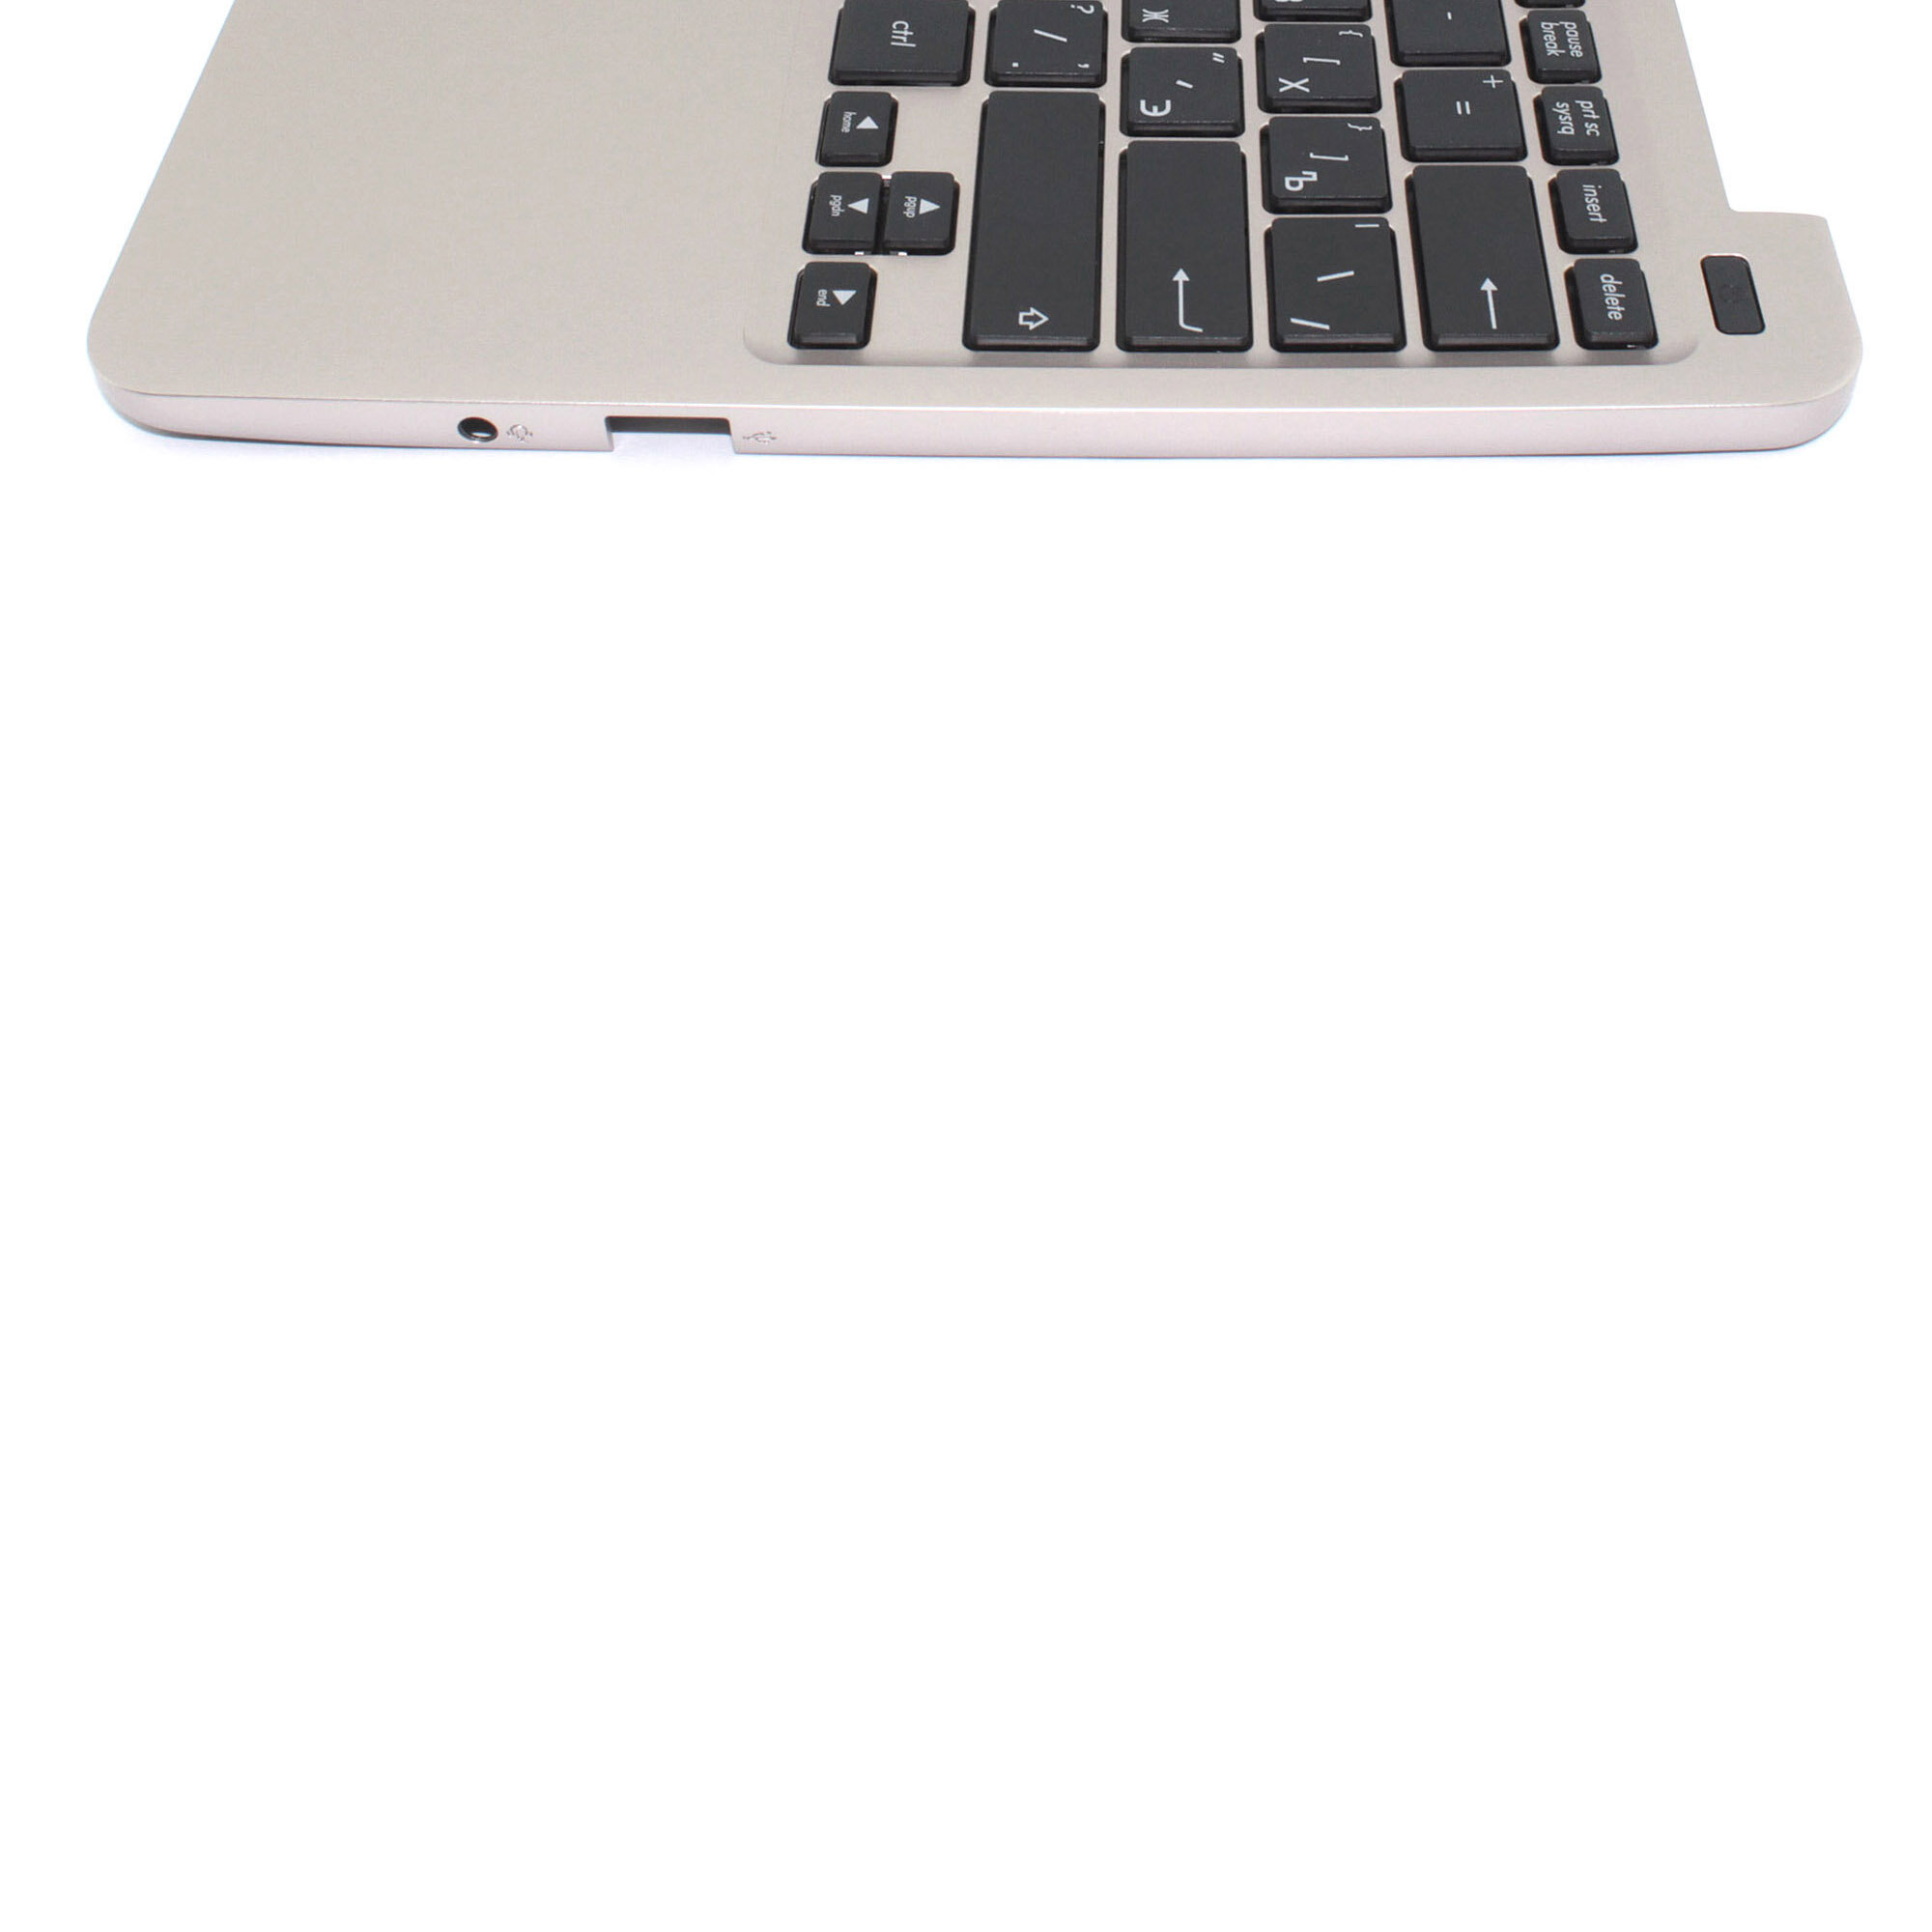 Клавиатура (топ-панель) для ноутбука Asus E200HA черная с бронзовым топкейсом